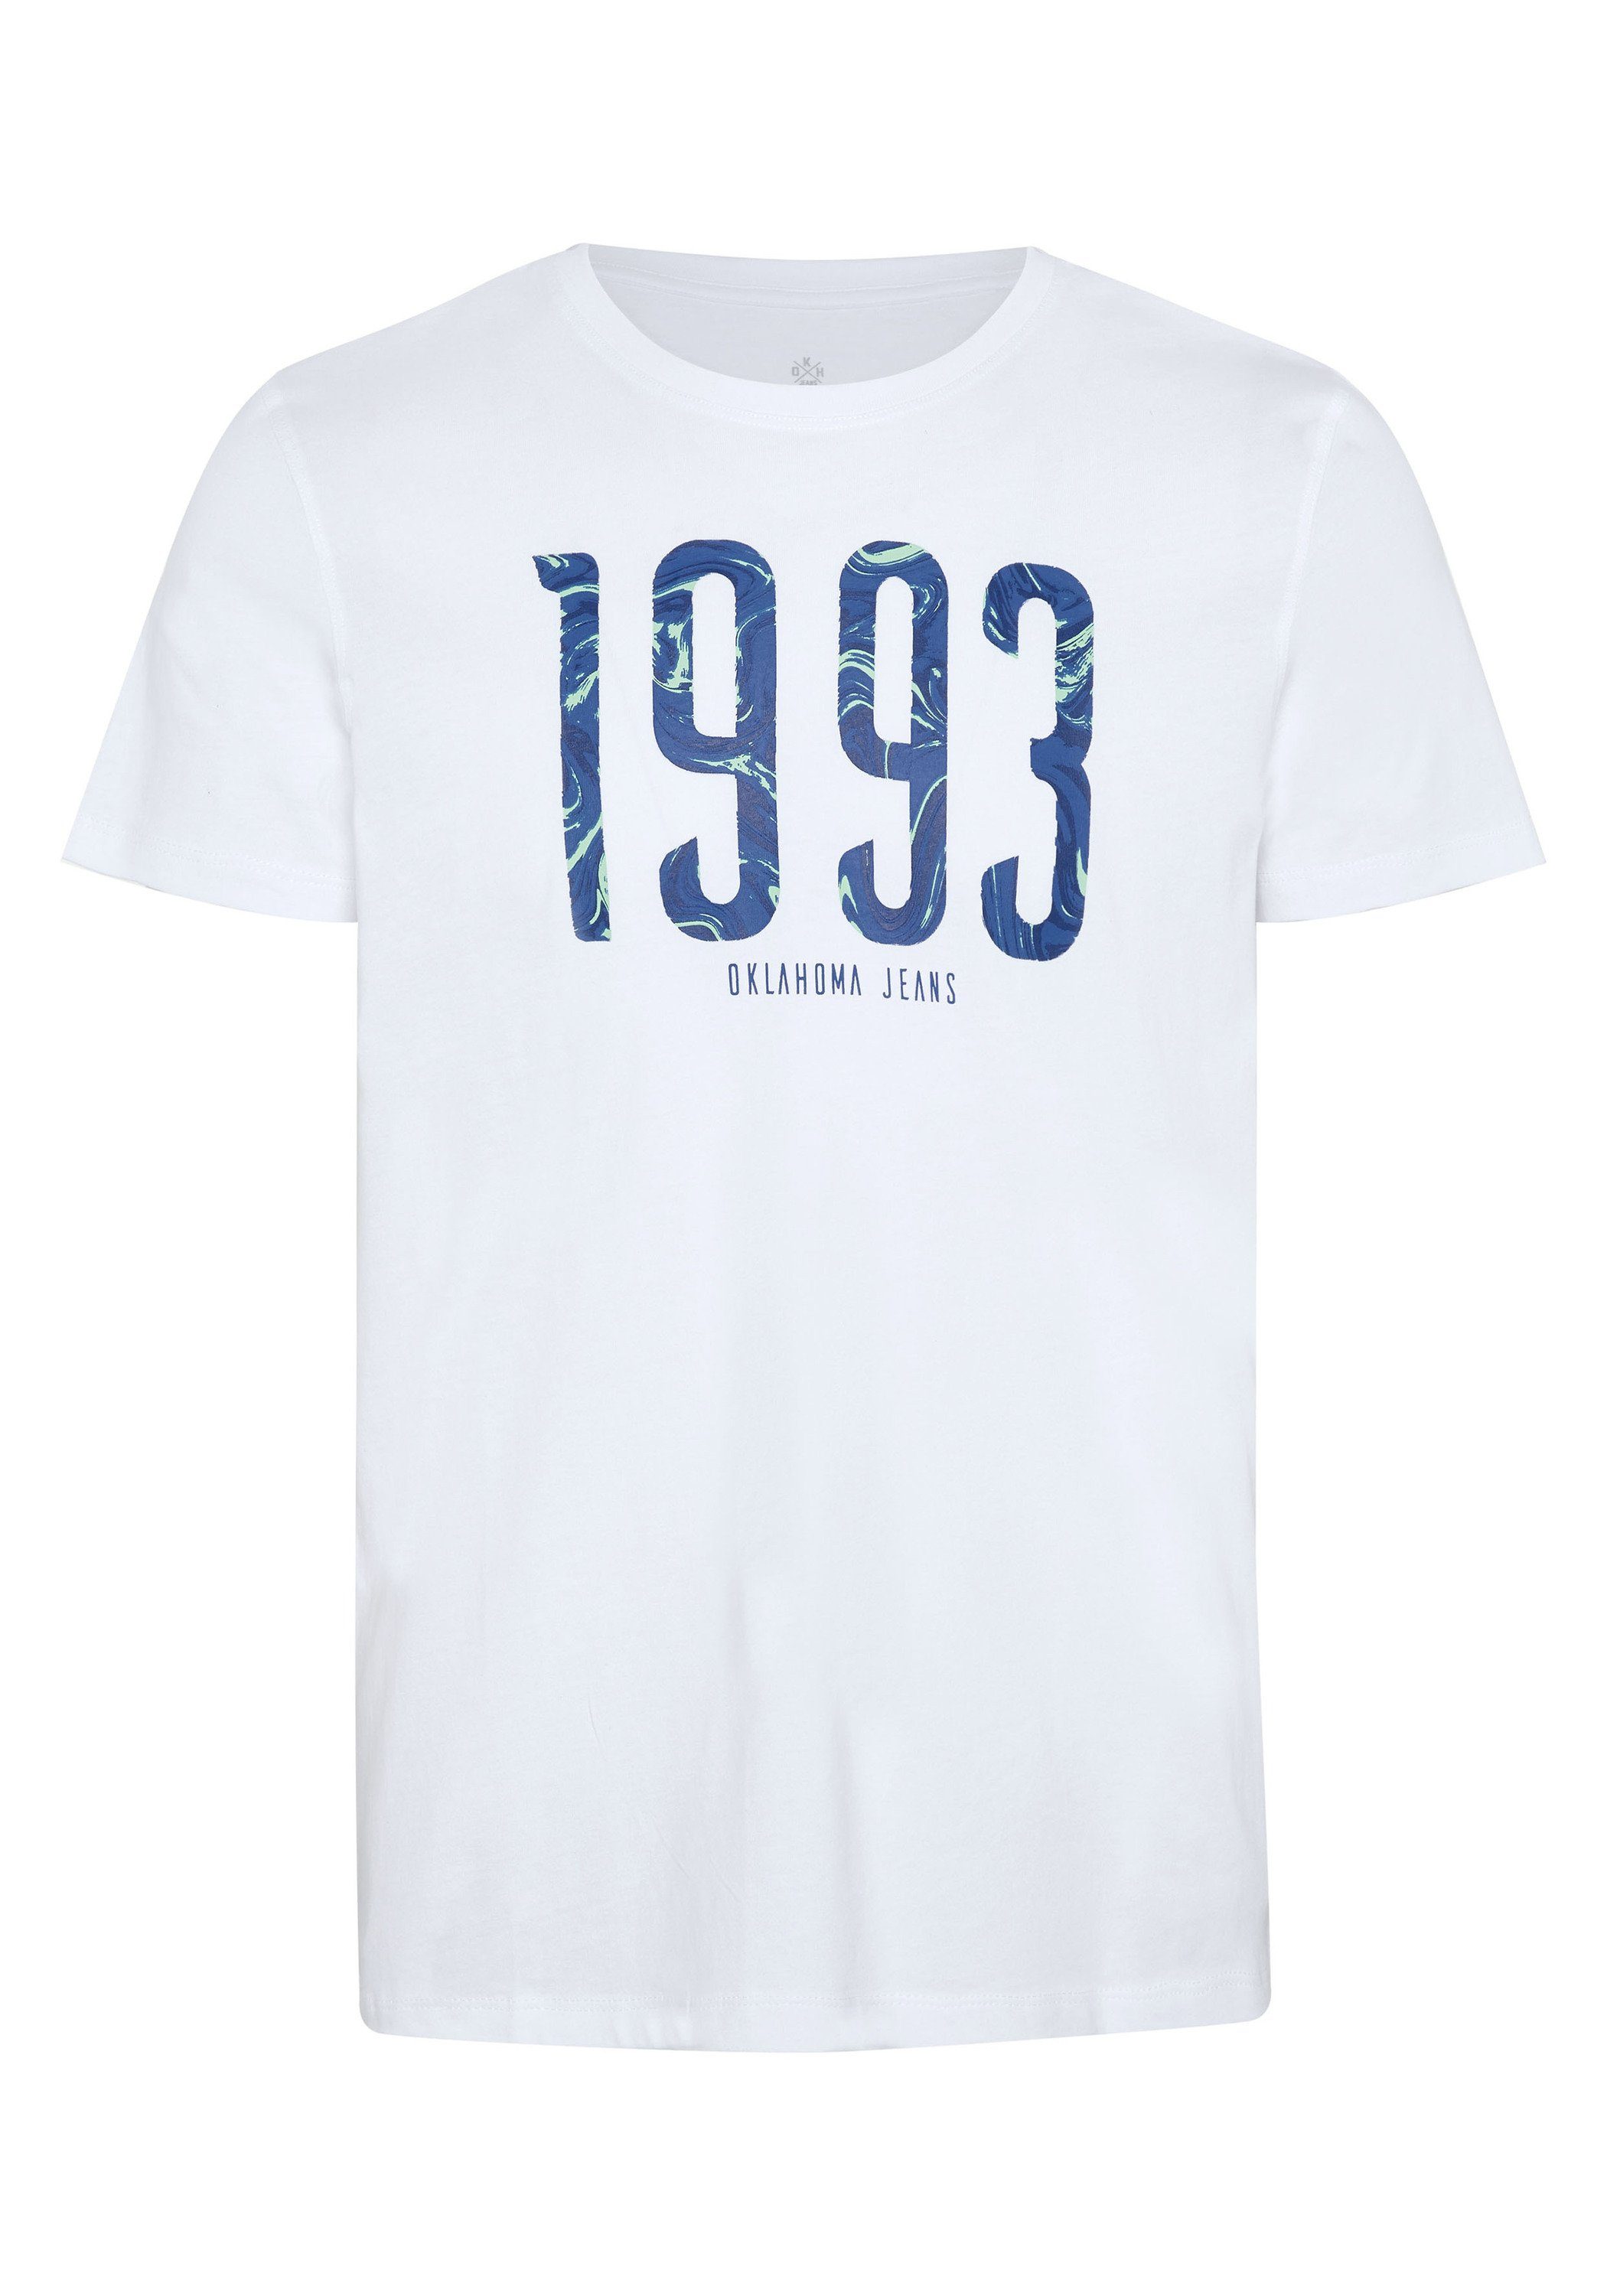 Schnellstmögliche Lieferung am nächsten Tag Oklahoma Jeans Print-Shirt mit 11-0601 1993-Print White Bright